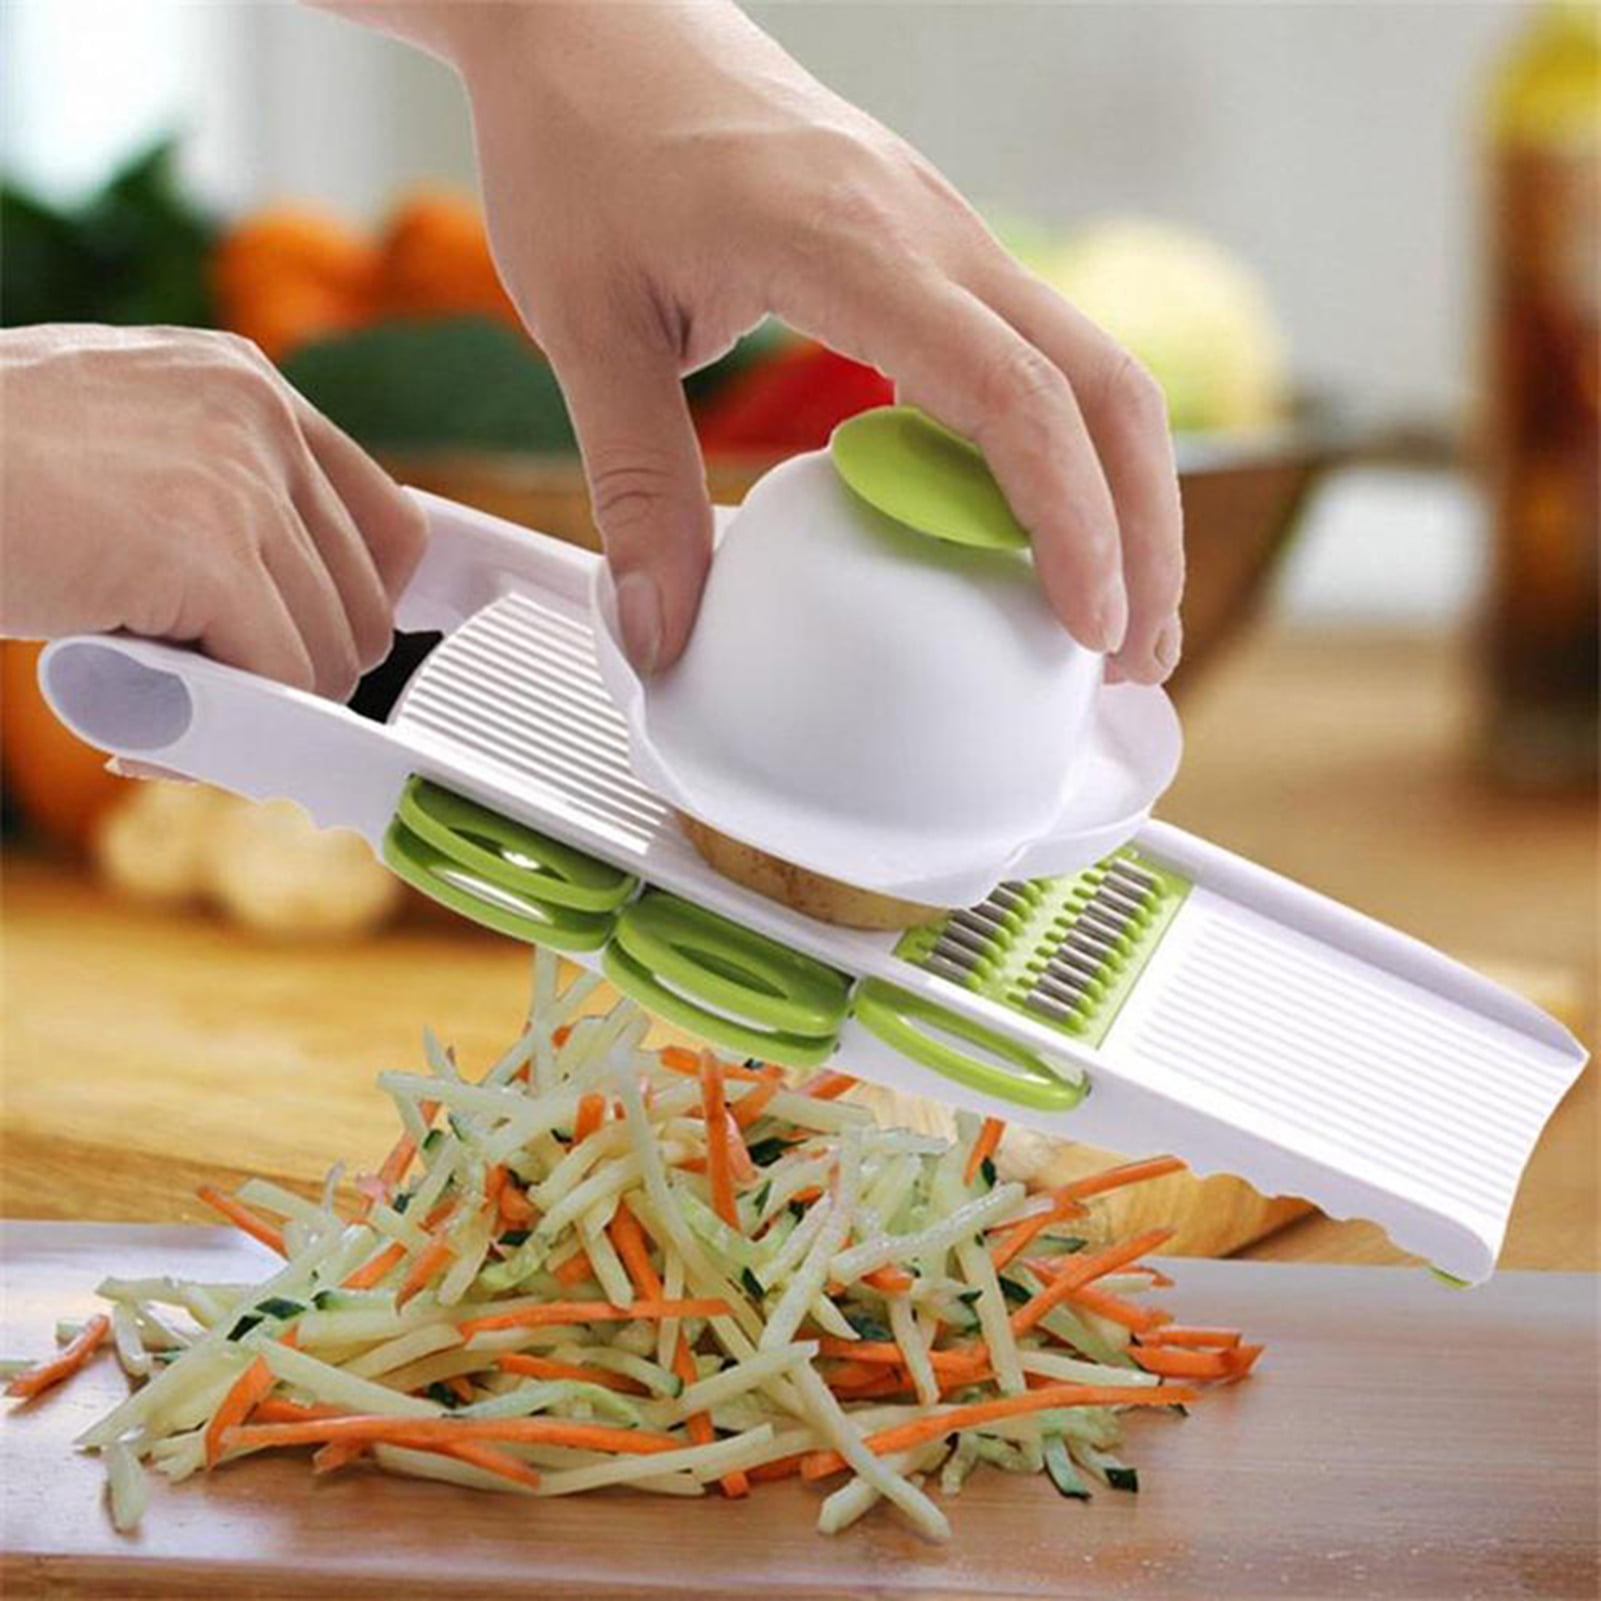 Suuker 6 in 1 Vegetable Slicer Adjustable Mandoline Food Slicer Multi Blade Removable Slicer Potato Veggie Slicer Vegetable Cutter Julienne Shredder